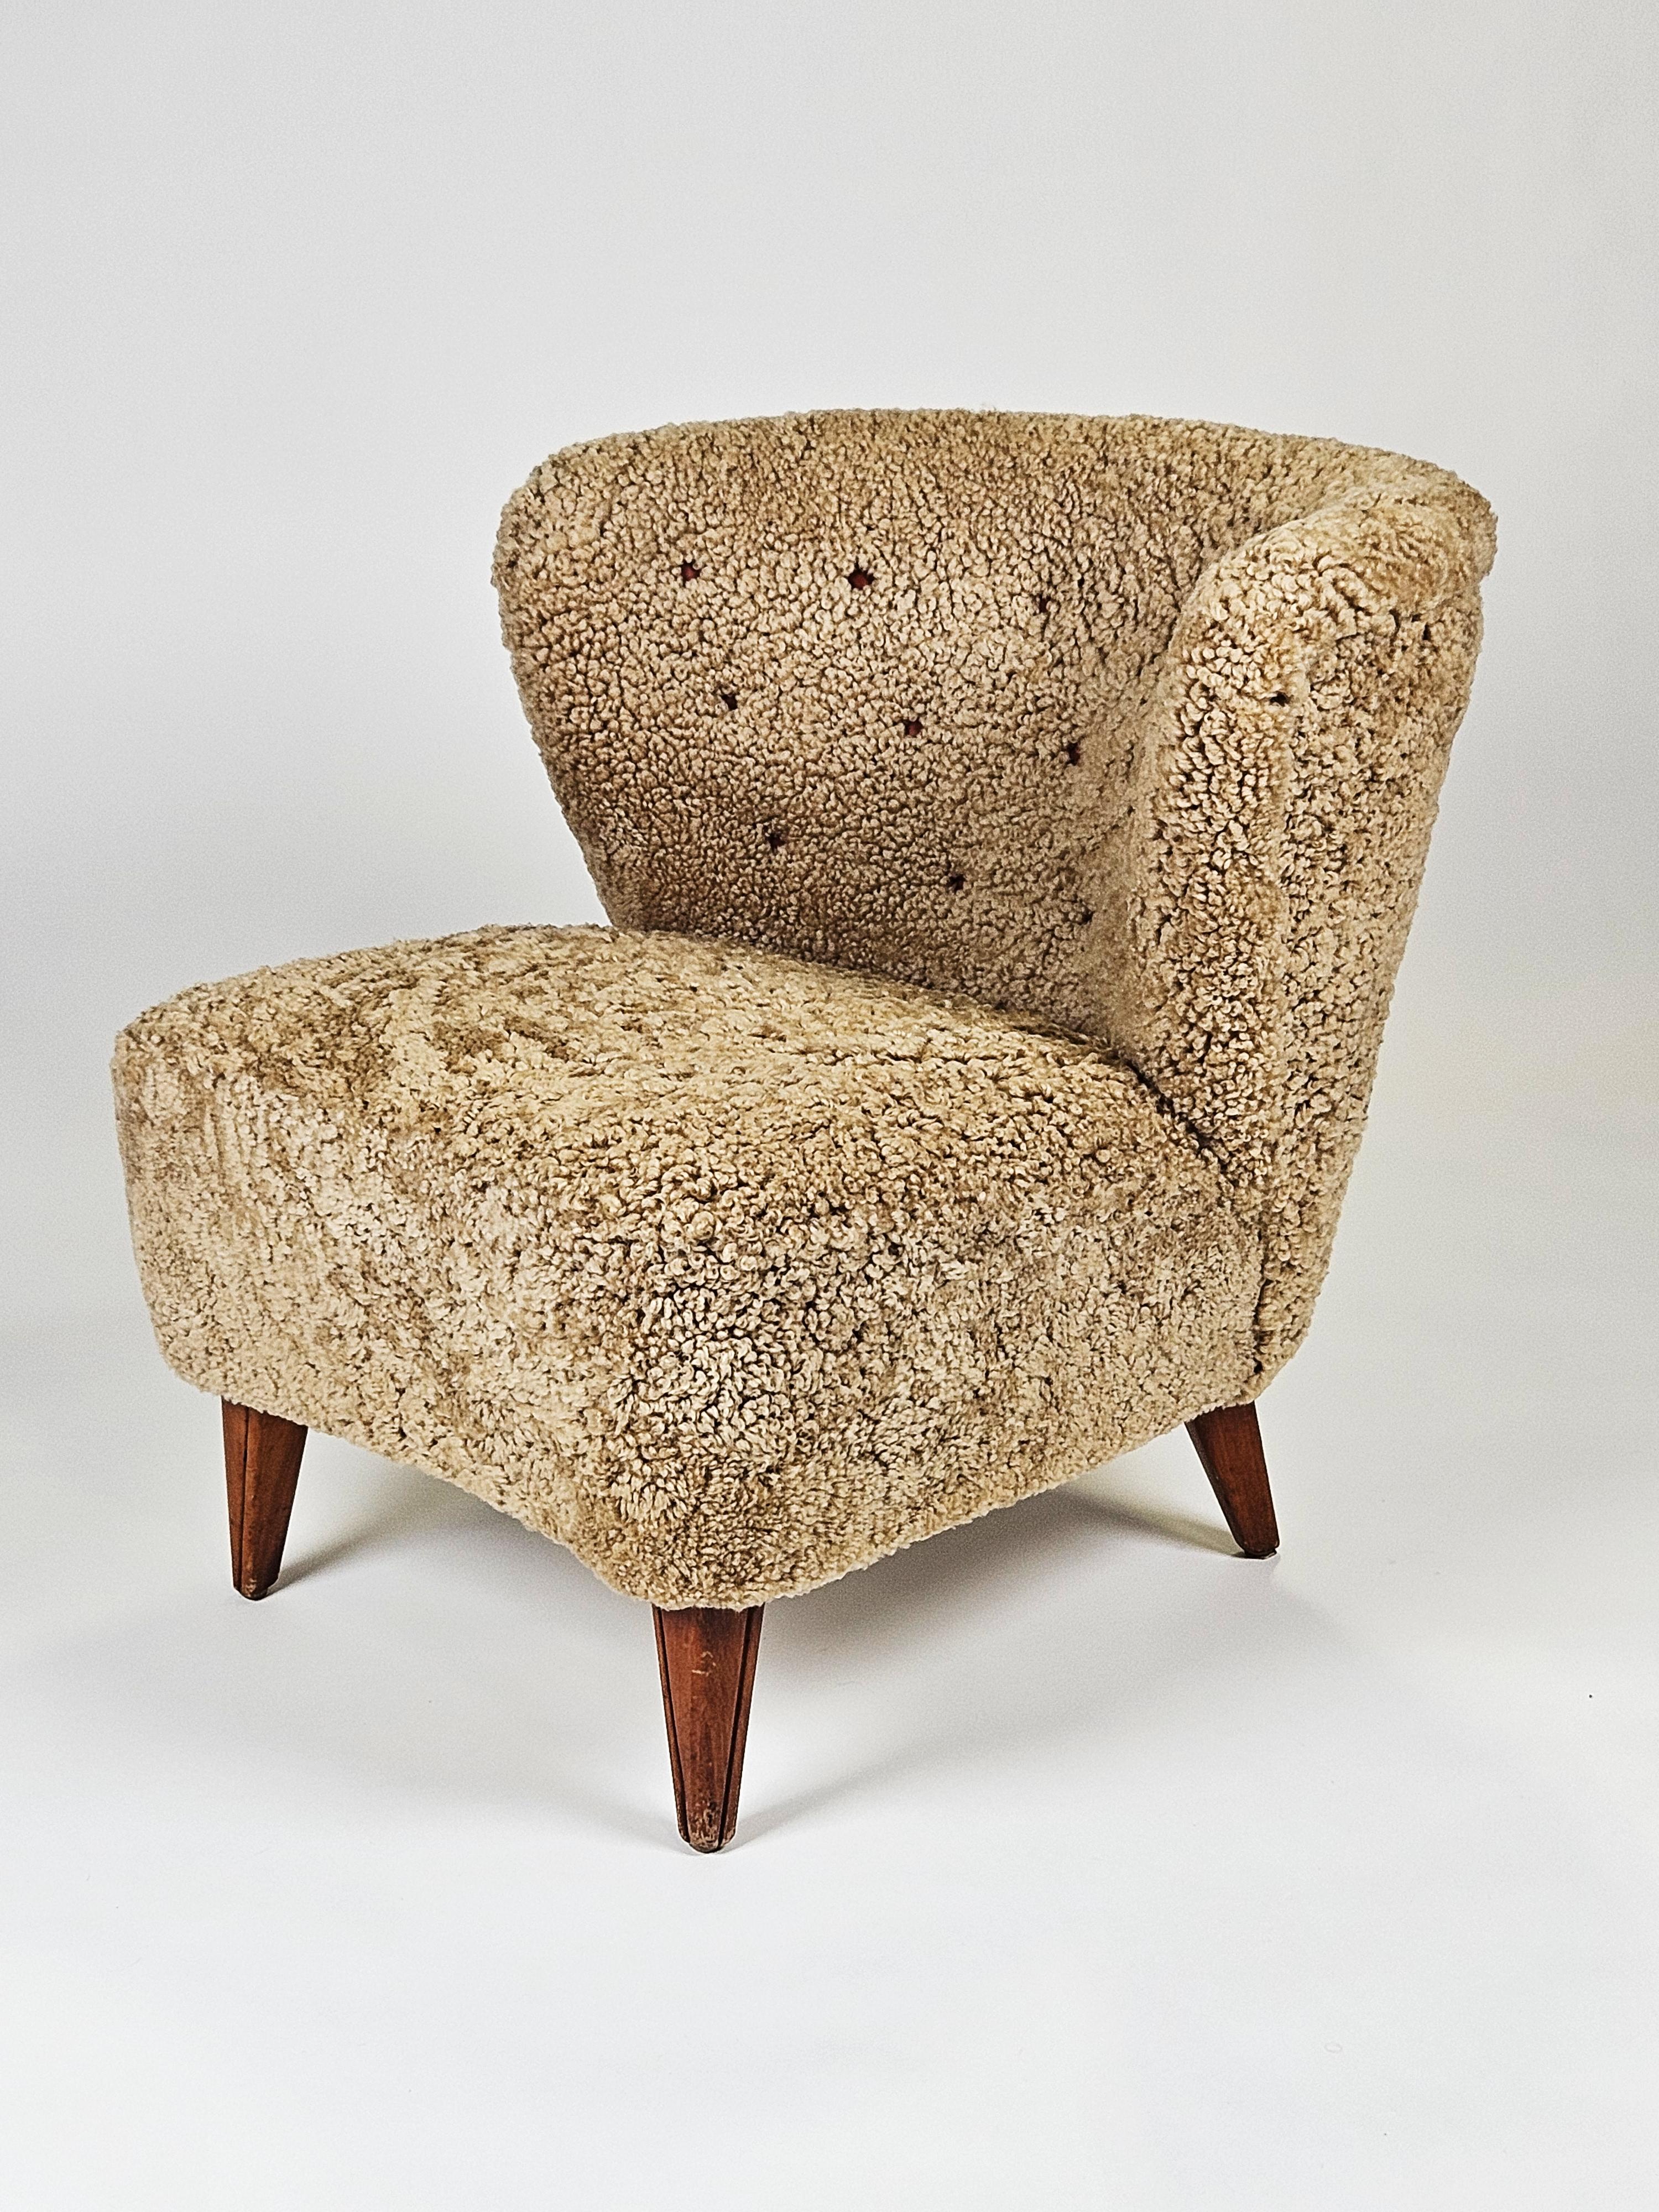 Chaise de salon trapue conçue et fabriquée par Gösta Jonsson, en Suède, dans les années 1950. 

Rembourré en peau de mouton couleur miel. 

Un design moderne et épuré. Une véritable pièce The Modern Scandinavian. 